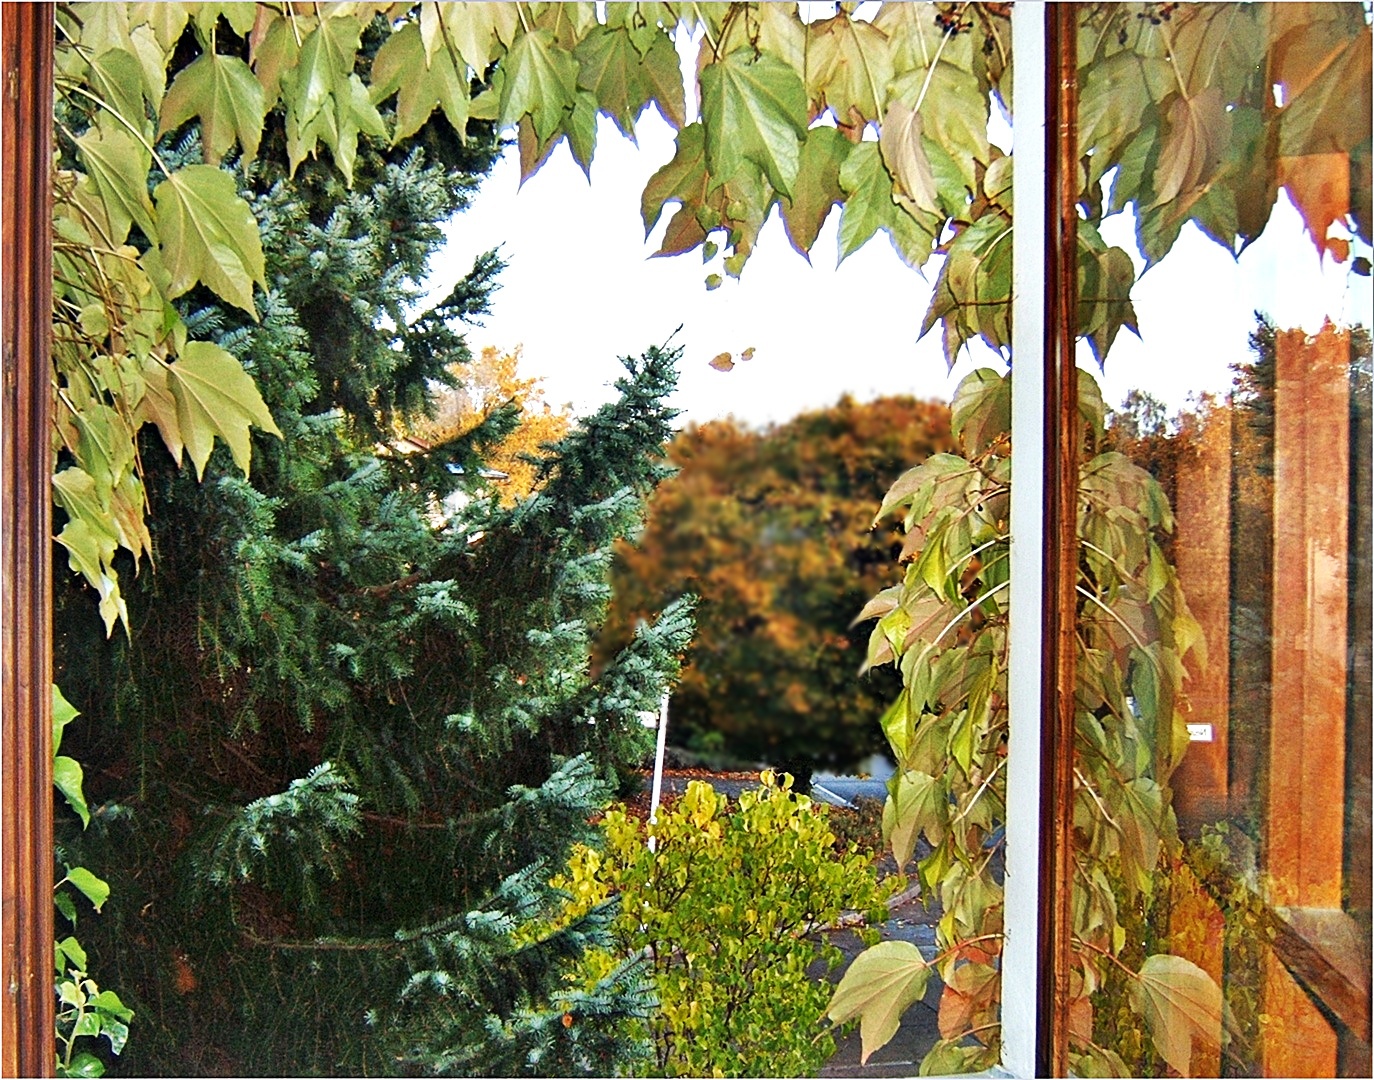 bisschen Herbst, bisschen Spiegelei